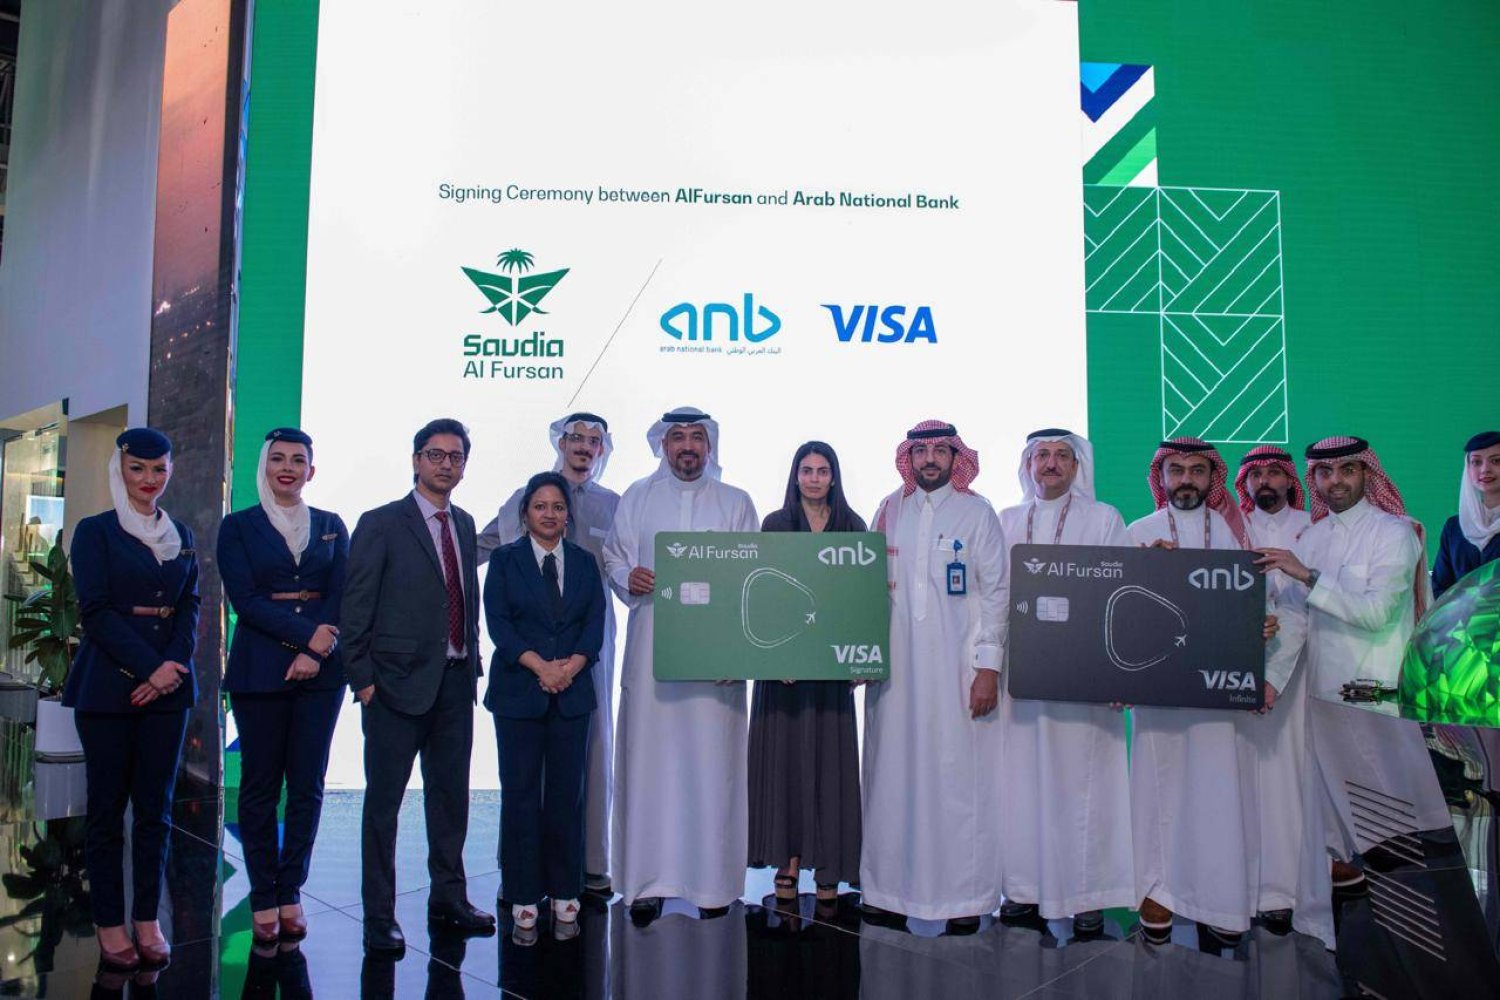 الاتفاقية ستمنح حاملي البطاقات من عملاء البنك العربي من أعضاء برنامج الولاء «الفرسان» بُعداً جديداً من التميز (الشرق الأوسط)